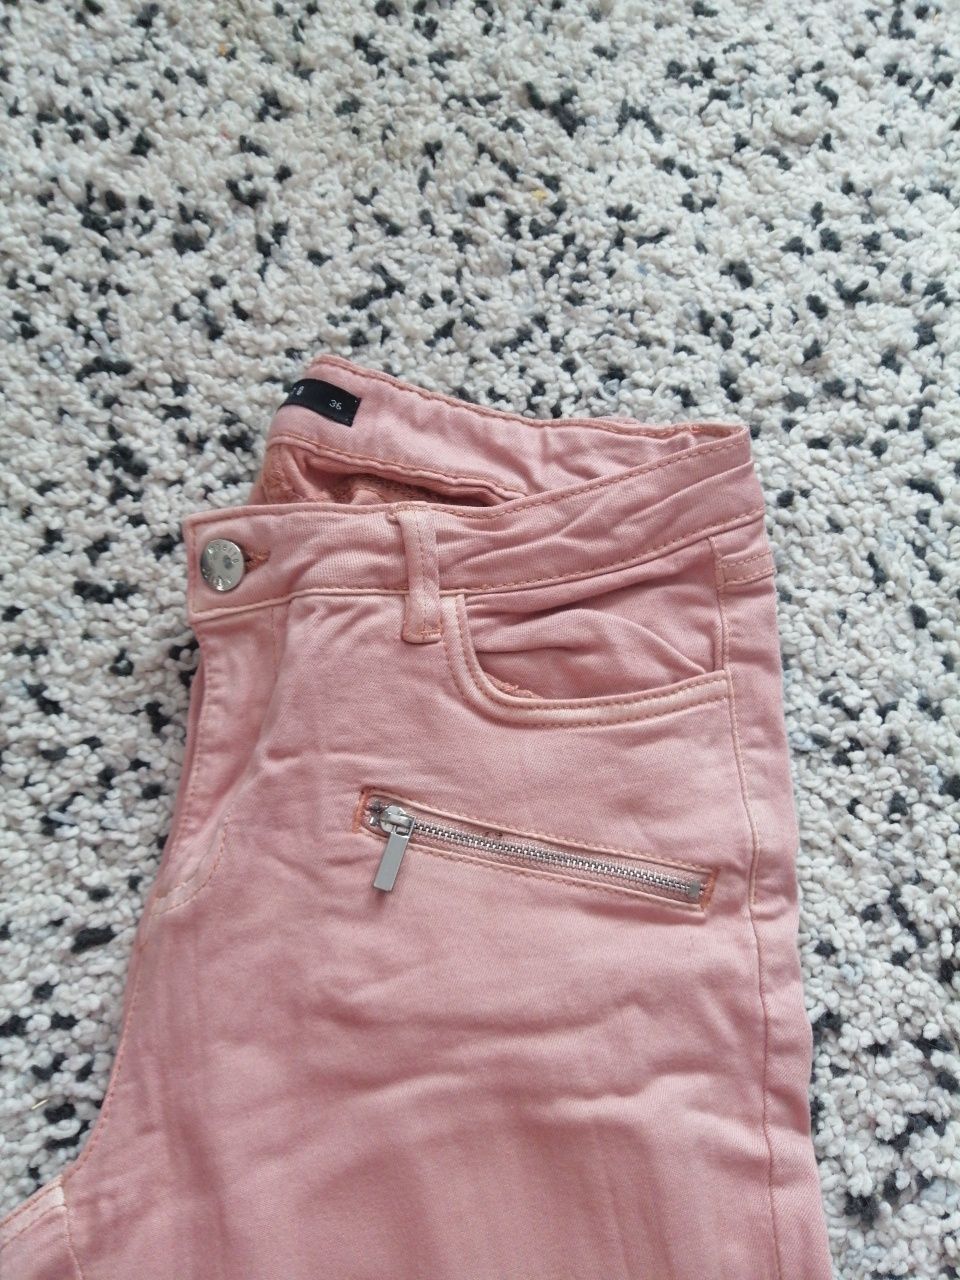 Spodnie rurki S 36 Mohito jeansowe pudrowy róż różowe zamkami Mohito